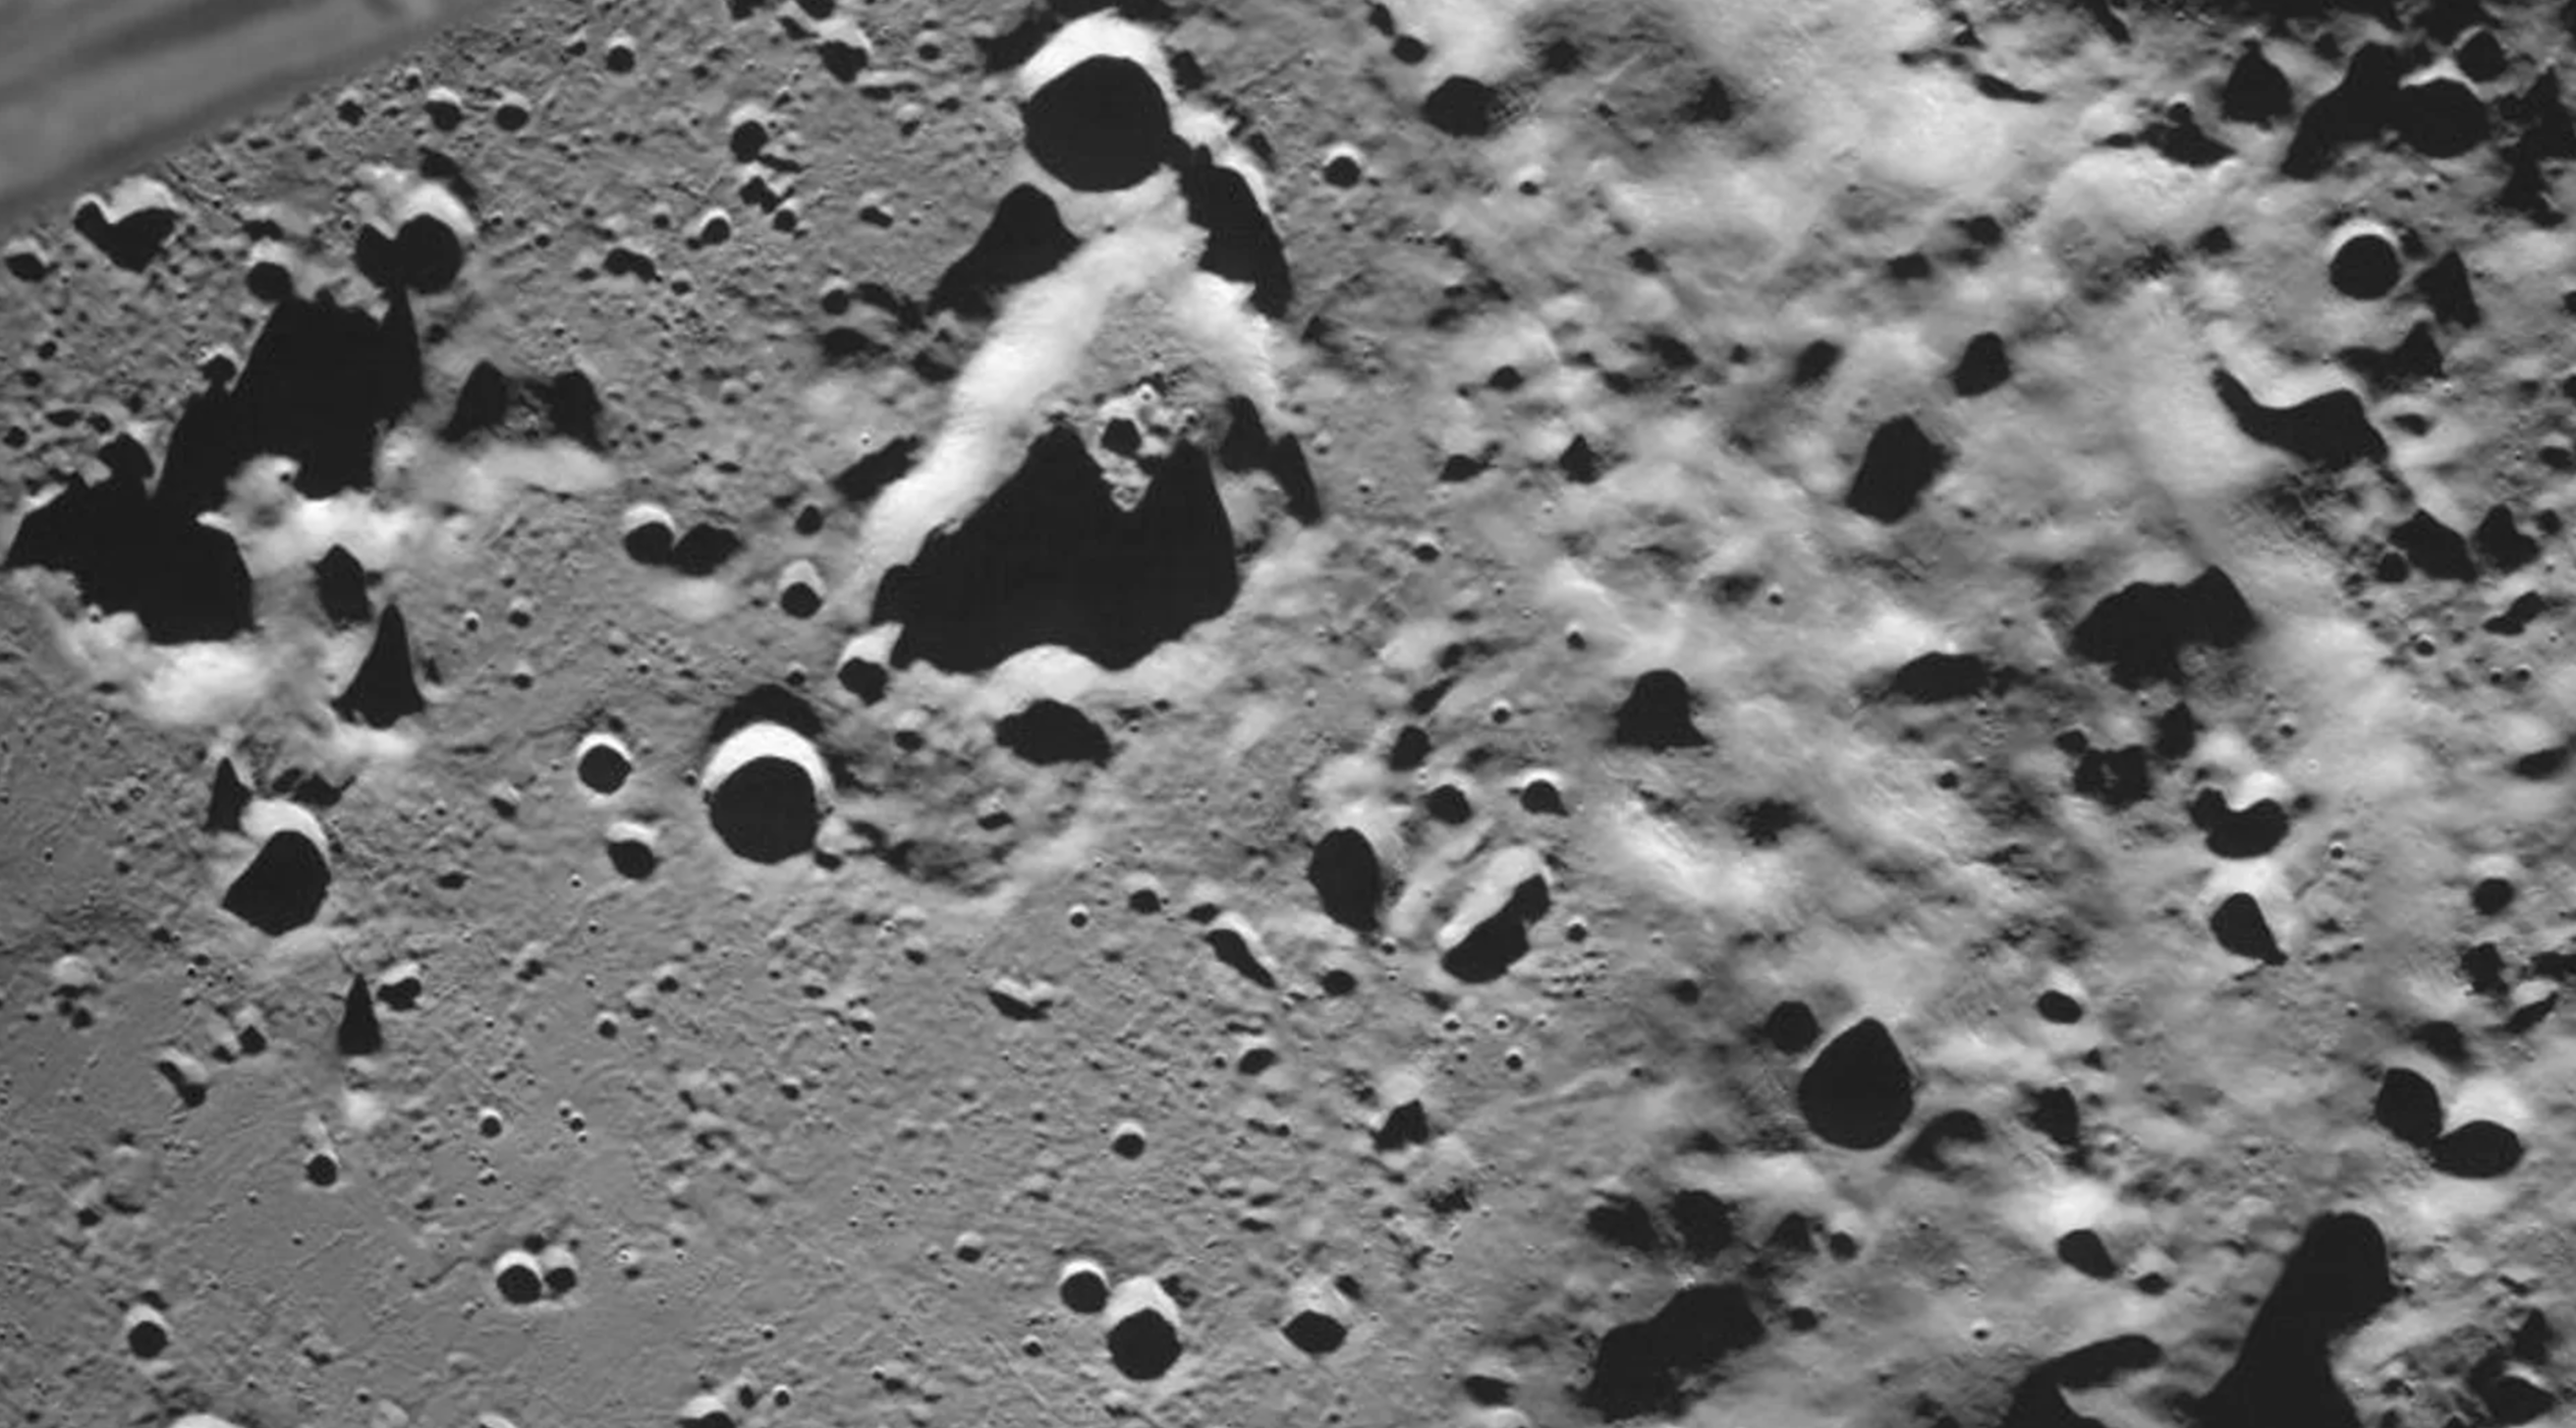 Первый спутник на поверхности луны. Луна-25 автоматическая межпланетная станция. Российская станция Луна 25. Снимки поверхности Луны.